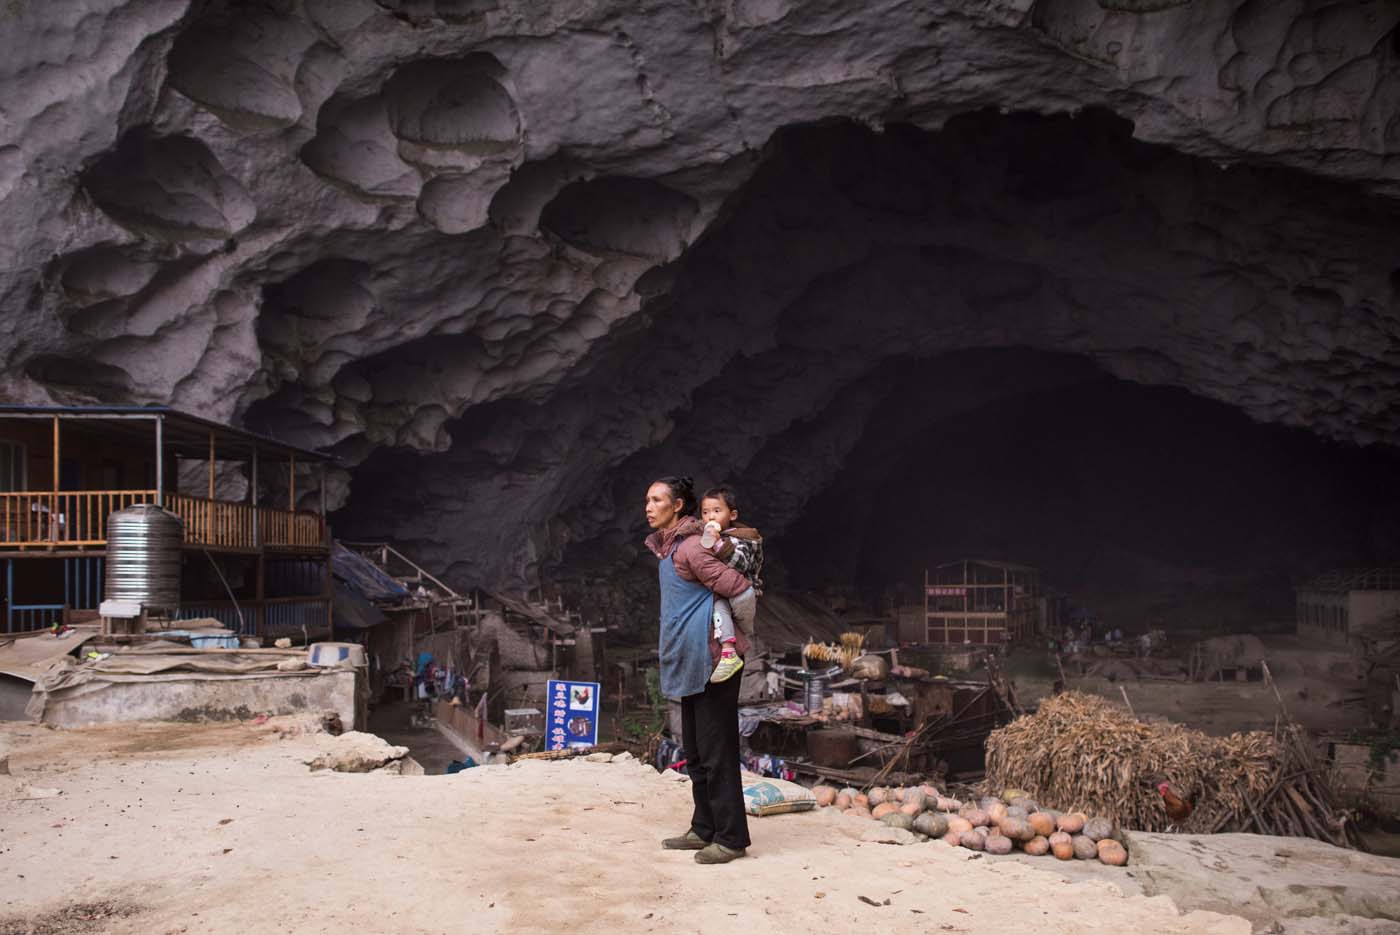 Un pueblo troglodita en China a punto de convertirse en atracción turística (fotos)